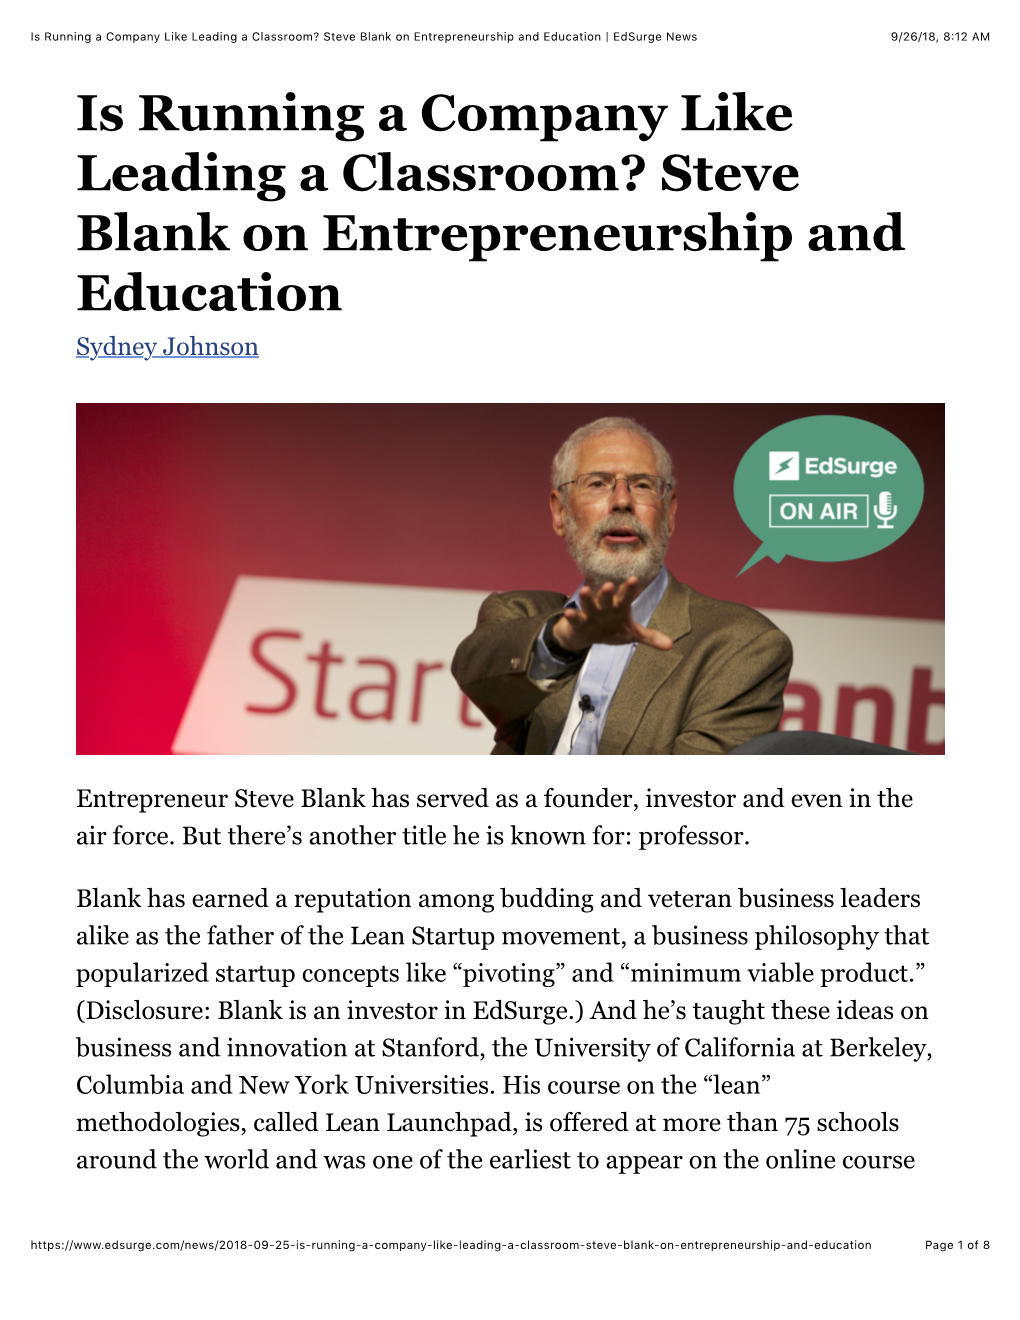 Steve Blank on Entrepreneurship and Education